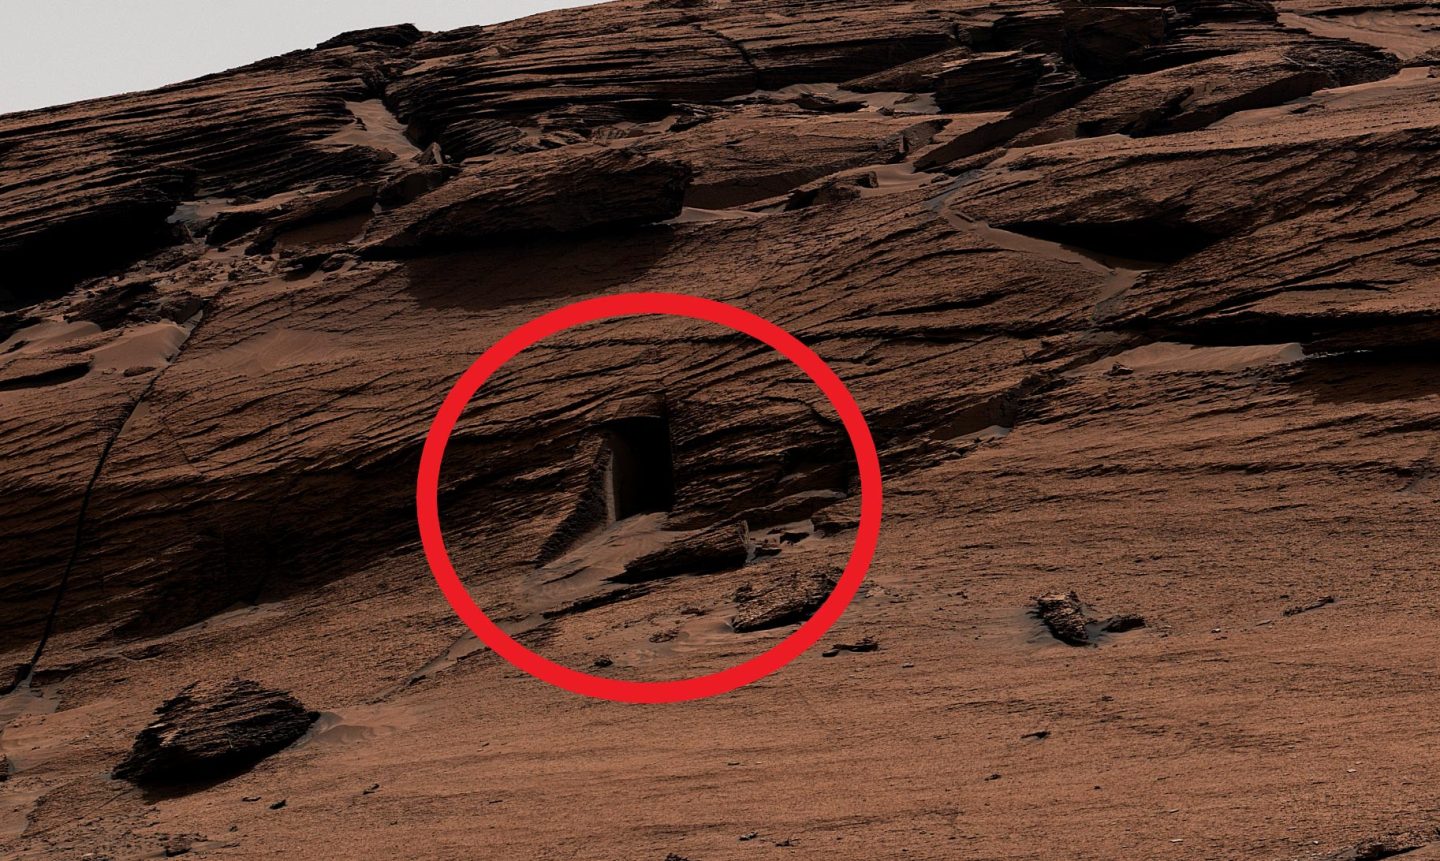 المدخل الغريب على سطح المريخ ليس بوابة لعبور المريخيين!